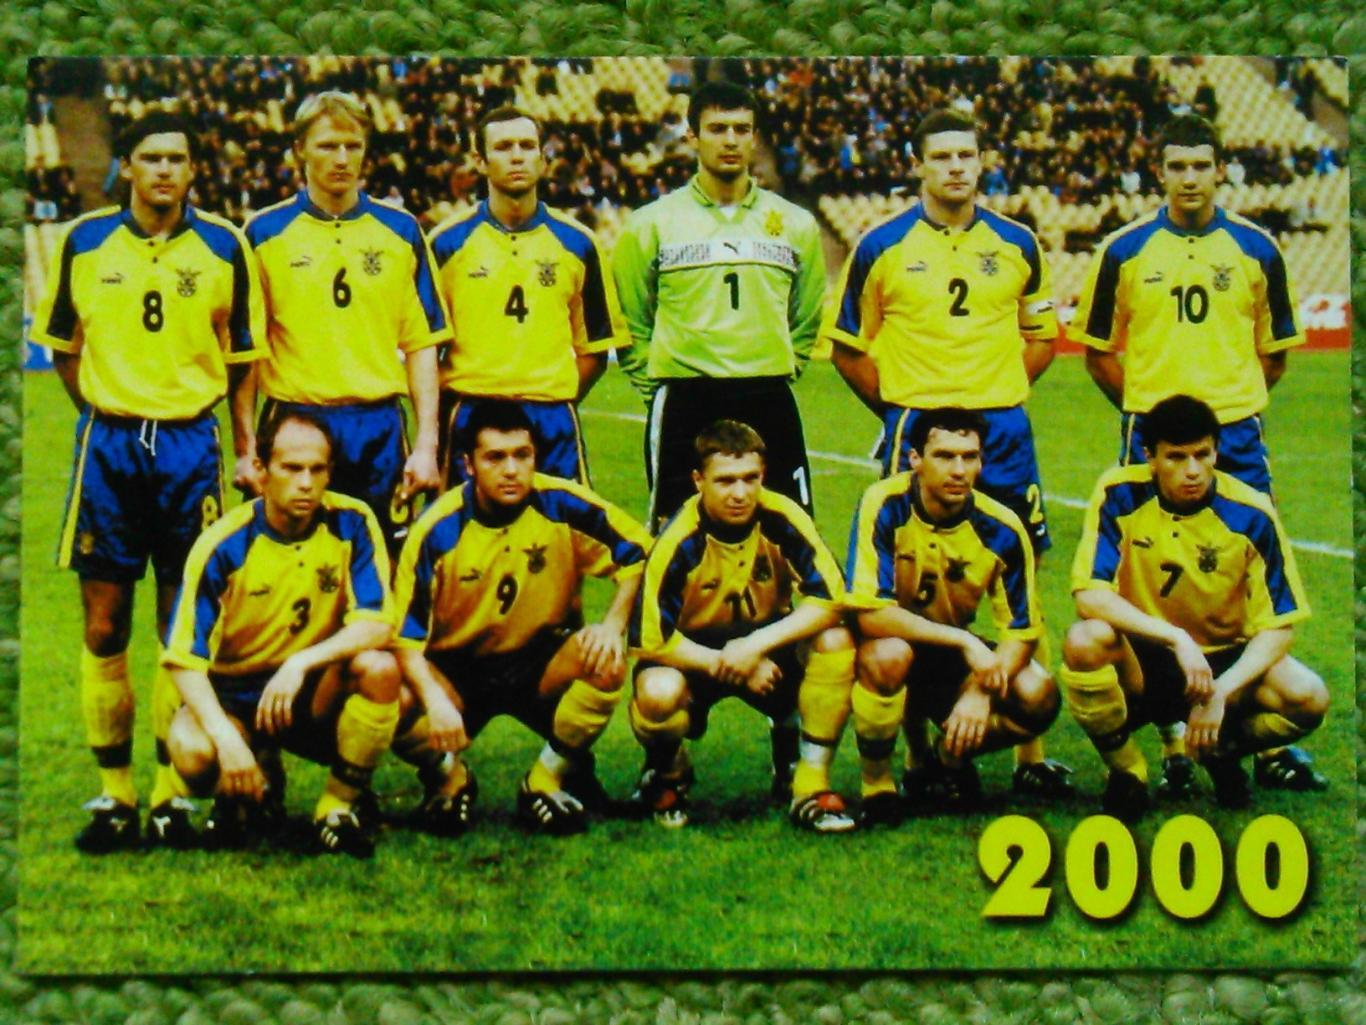 ЗБІРНА УКРАЇНИ (Украины) -календарик 2000. ОПТОМ скидки до 45%!